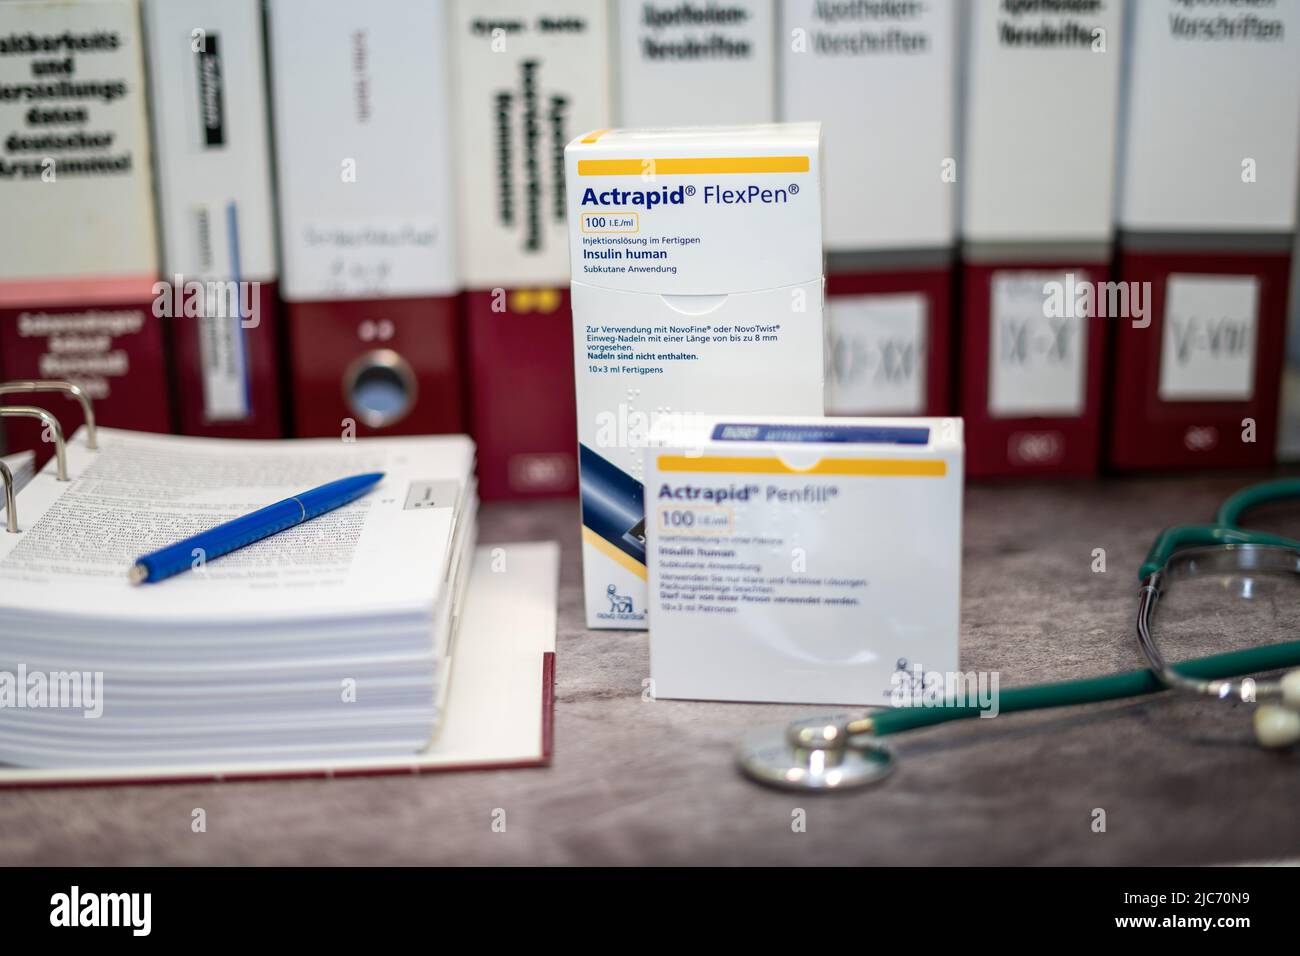 Medikament Actrapid mit humanem Insulin zur Behandlung von Diabetes. Auf einem Tisch und im Hintergrund verschiedene medizinische Bücher. Stockfoto